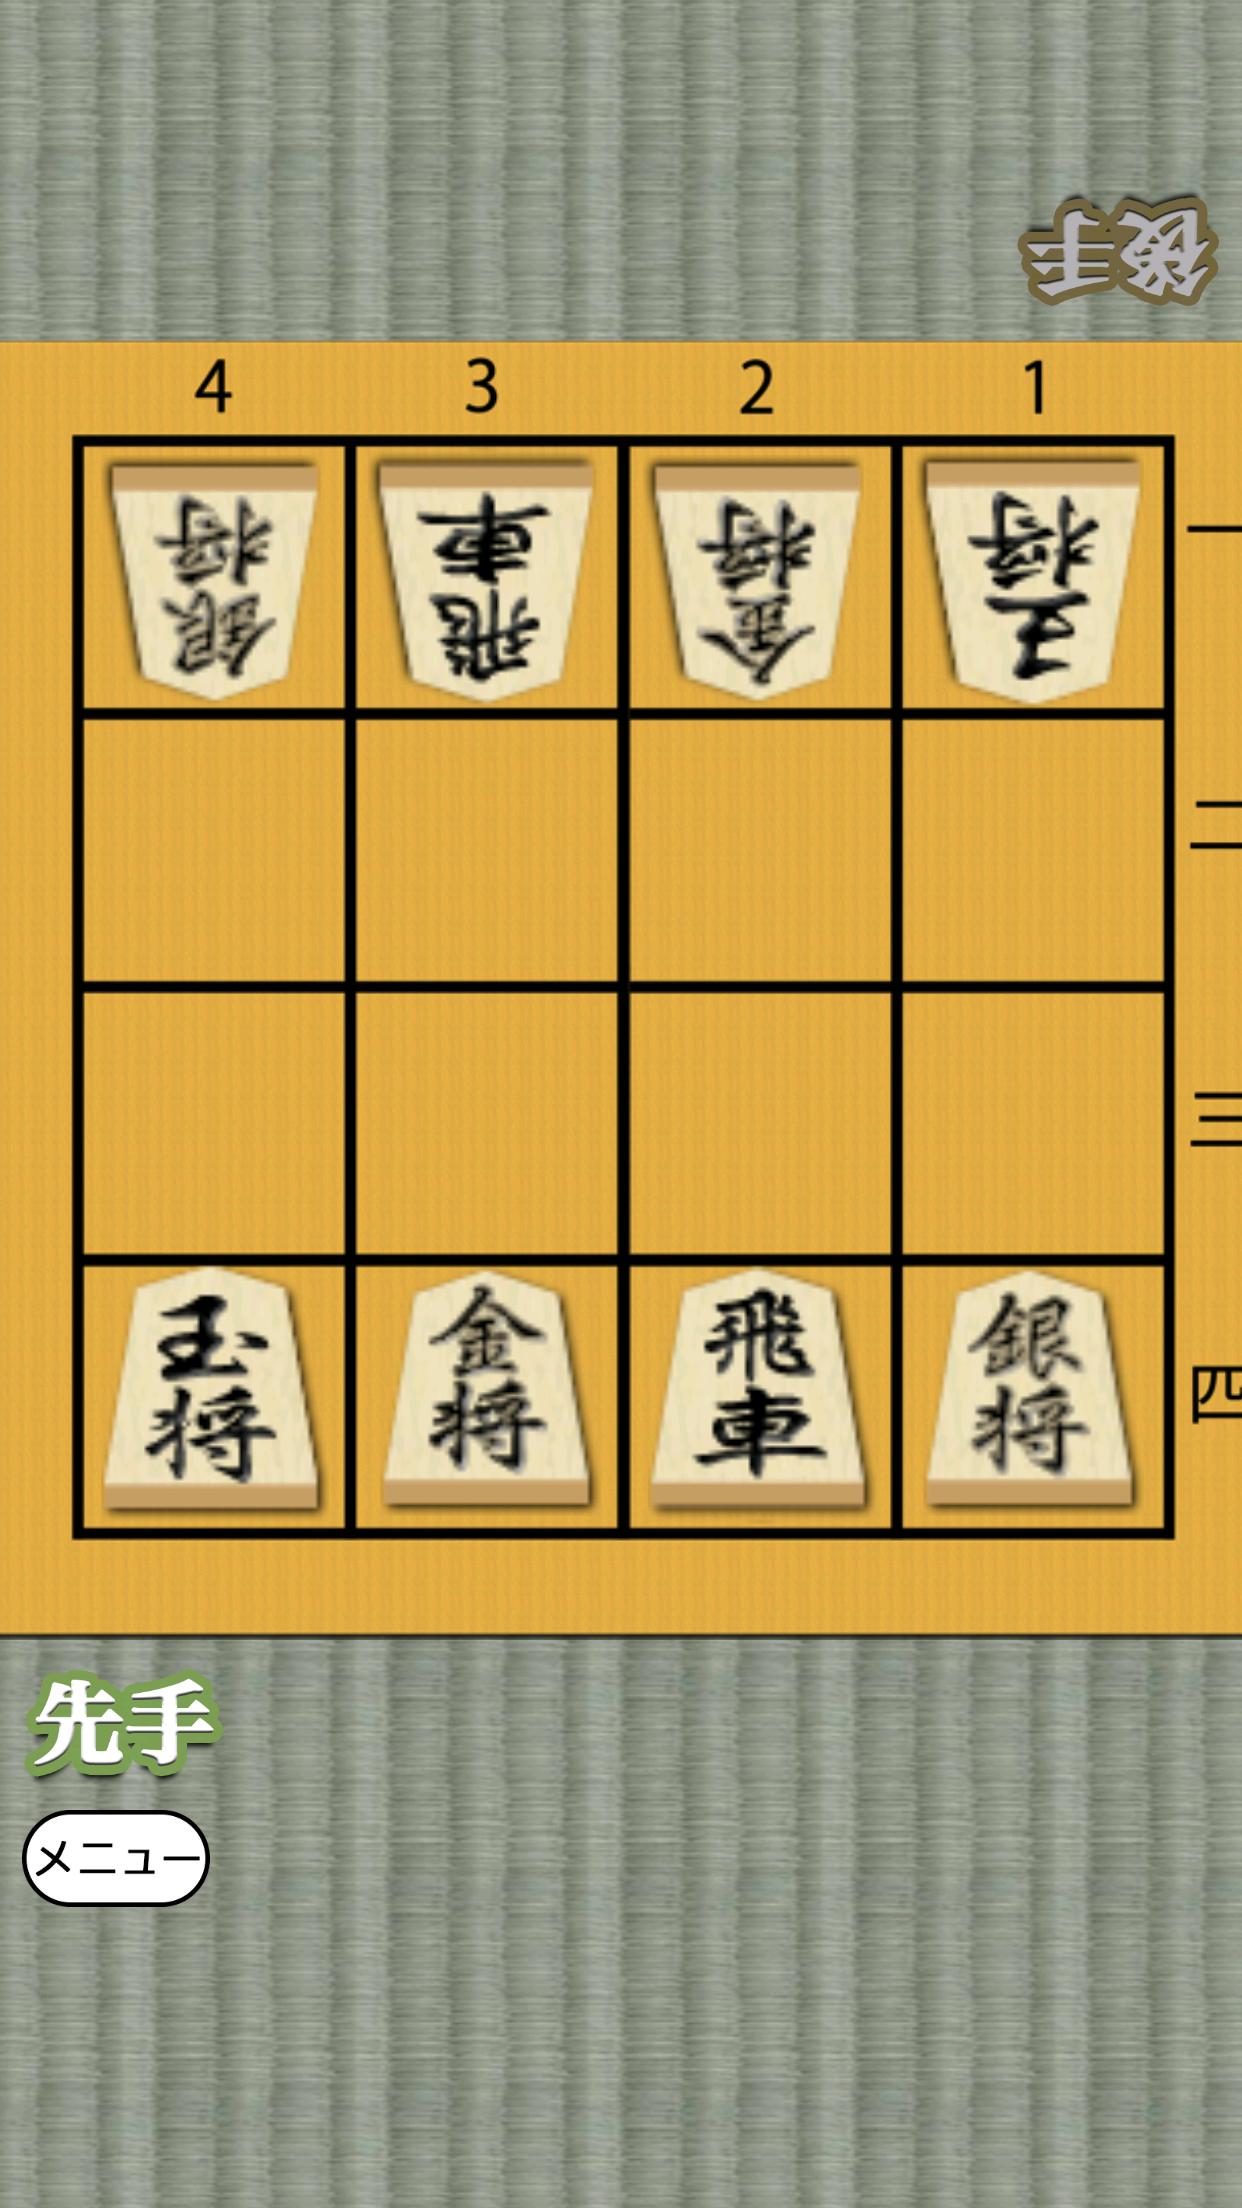 Shogi for beginners 1.0.4 Screenshot 6